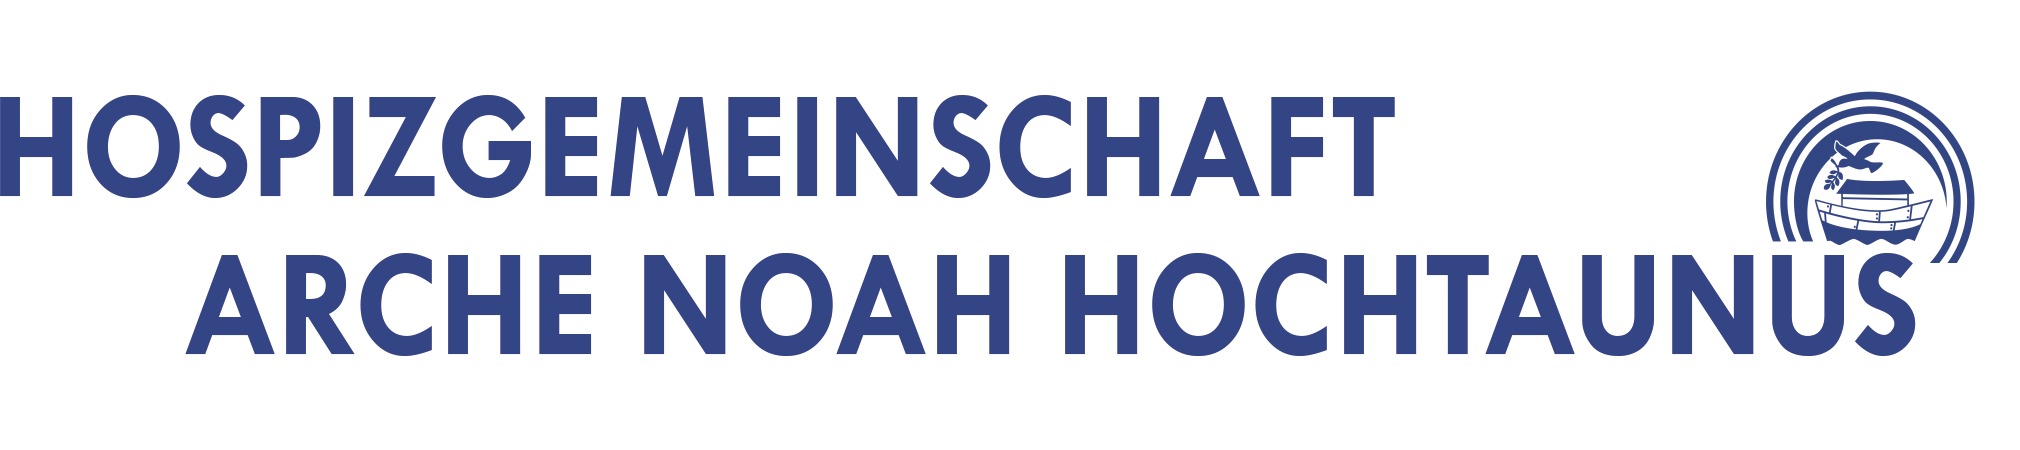 Hospizgemeinschaft Arche-Noah Hochtaunus